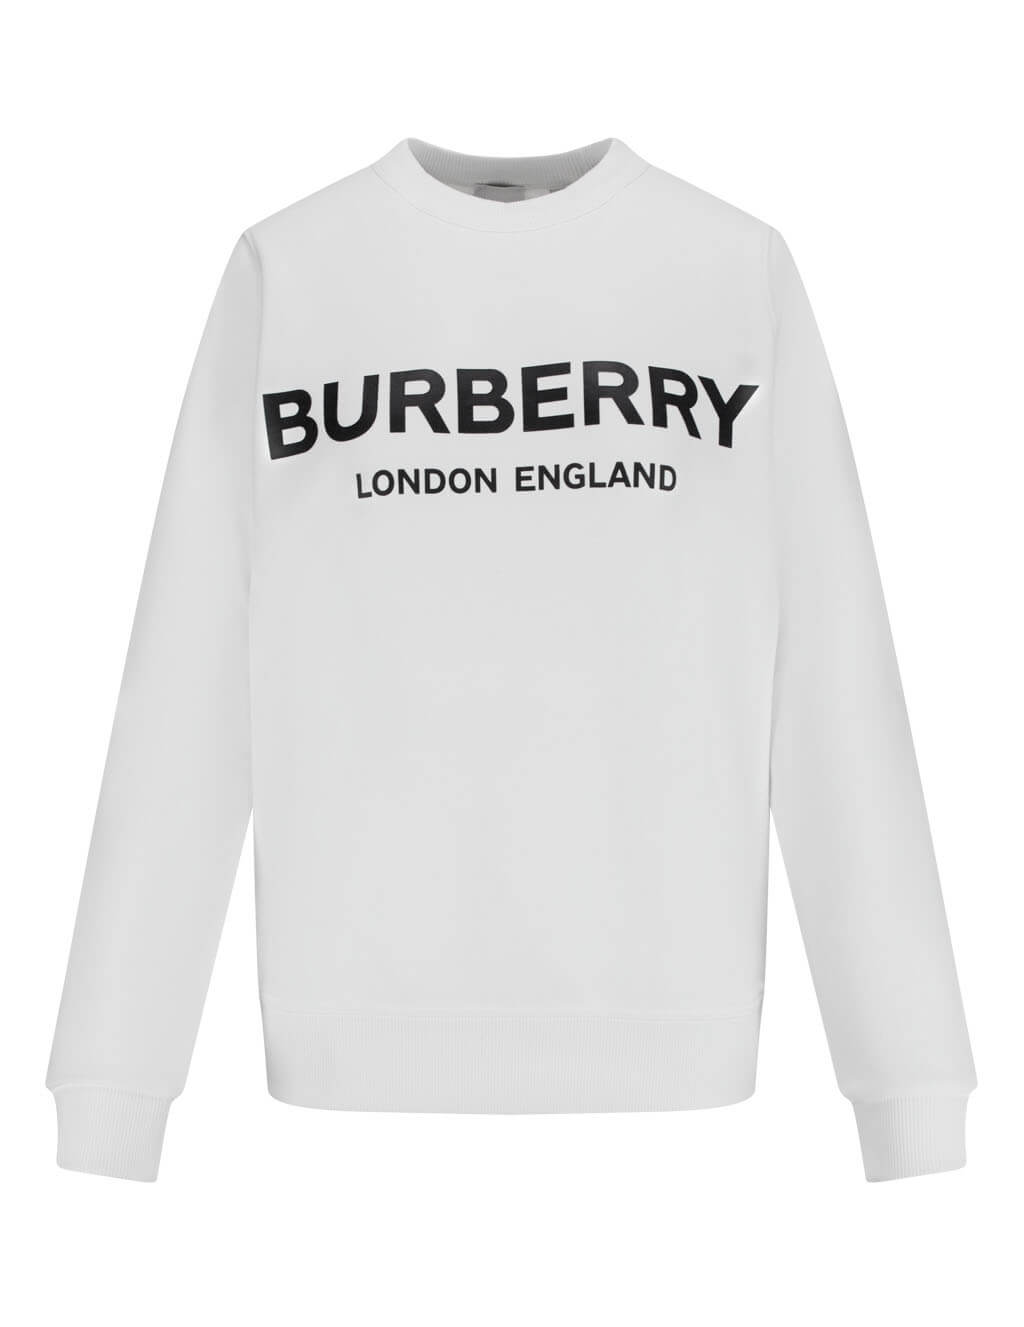 womens burberry sweatshirt